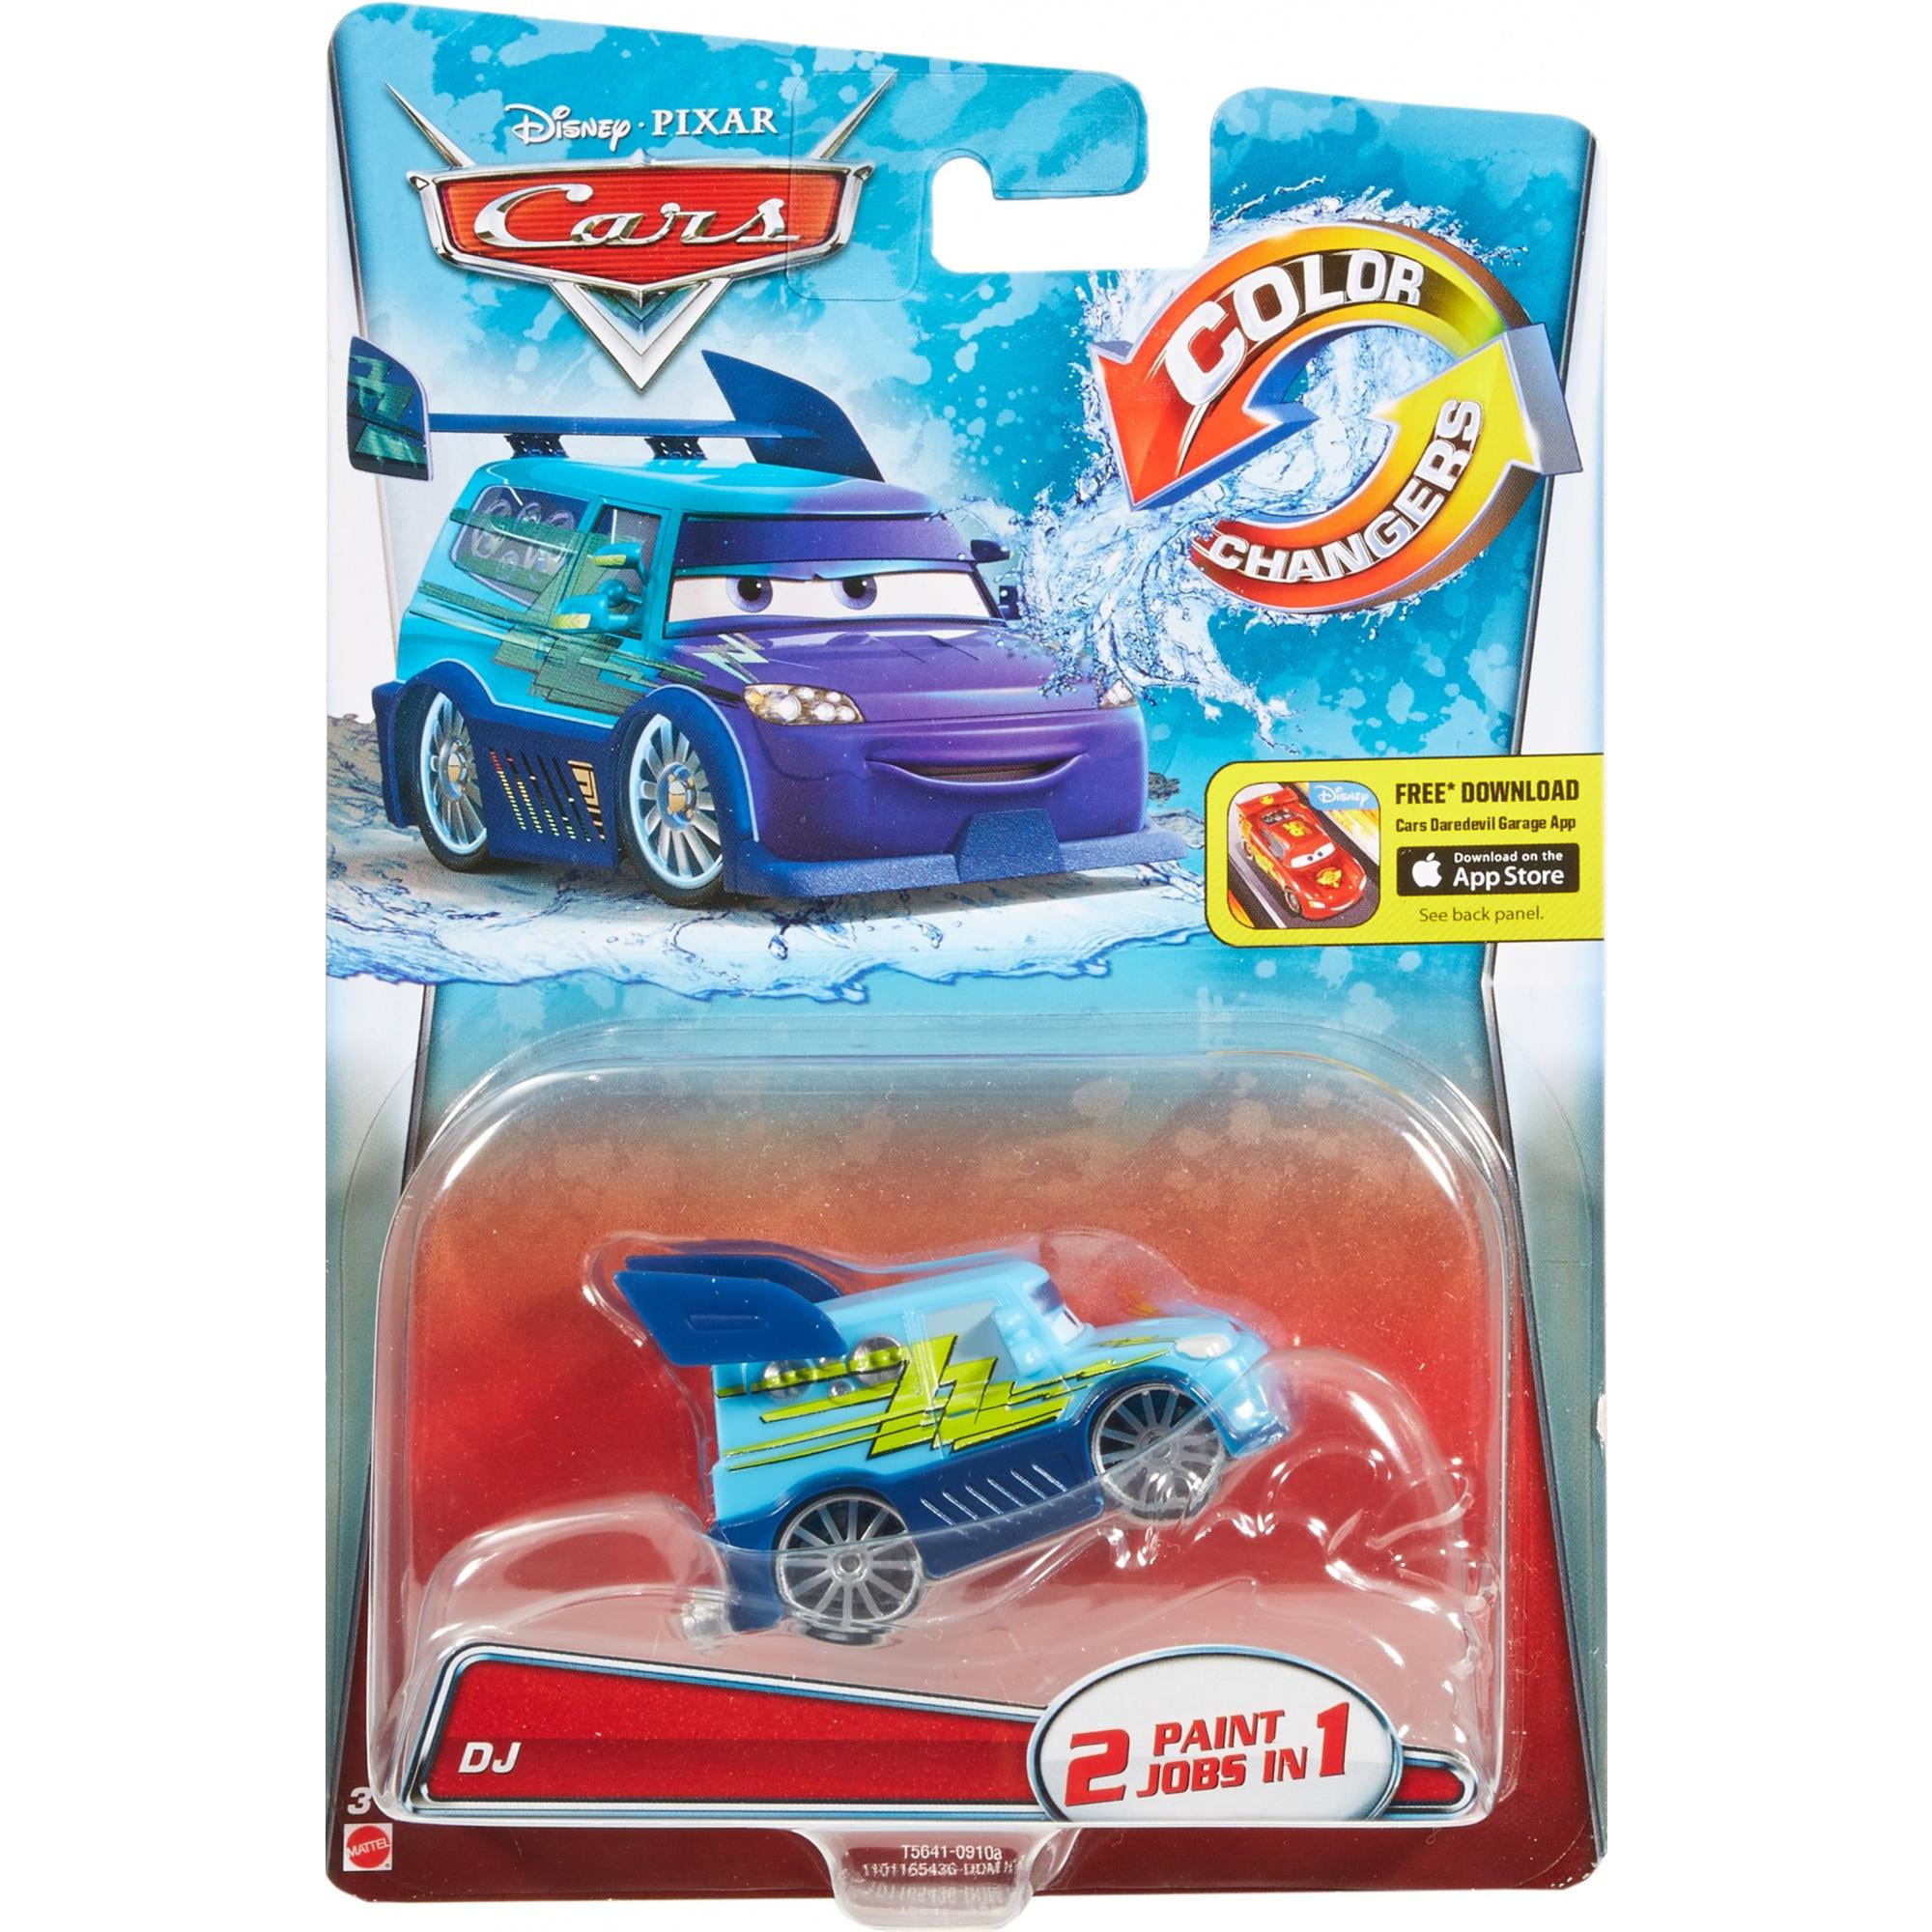 Disney Pixar Cars Color Changers Dj Vehicle Walmart Com Walmart Com